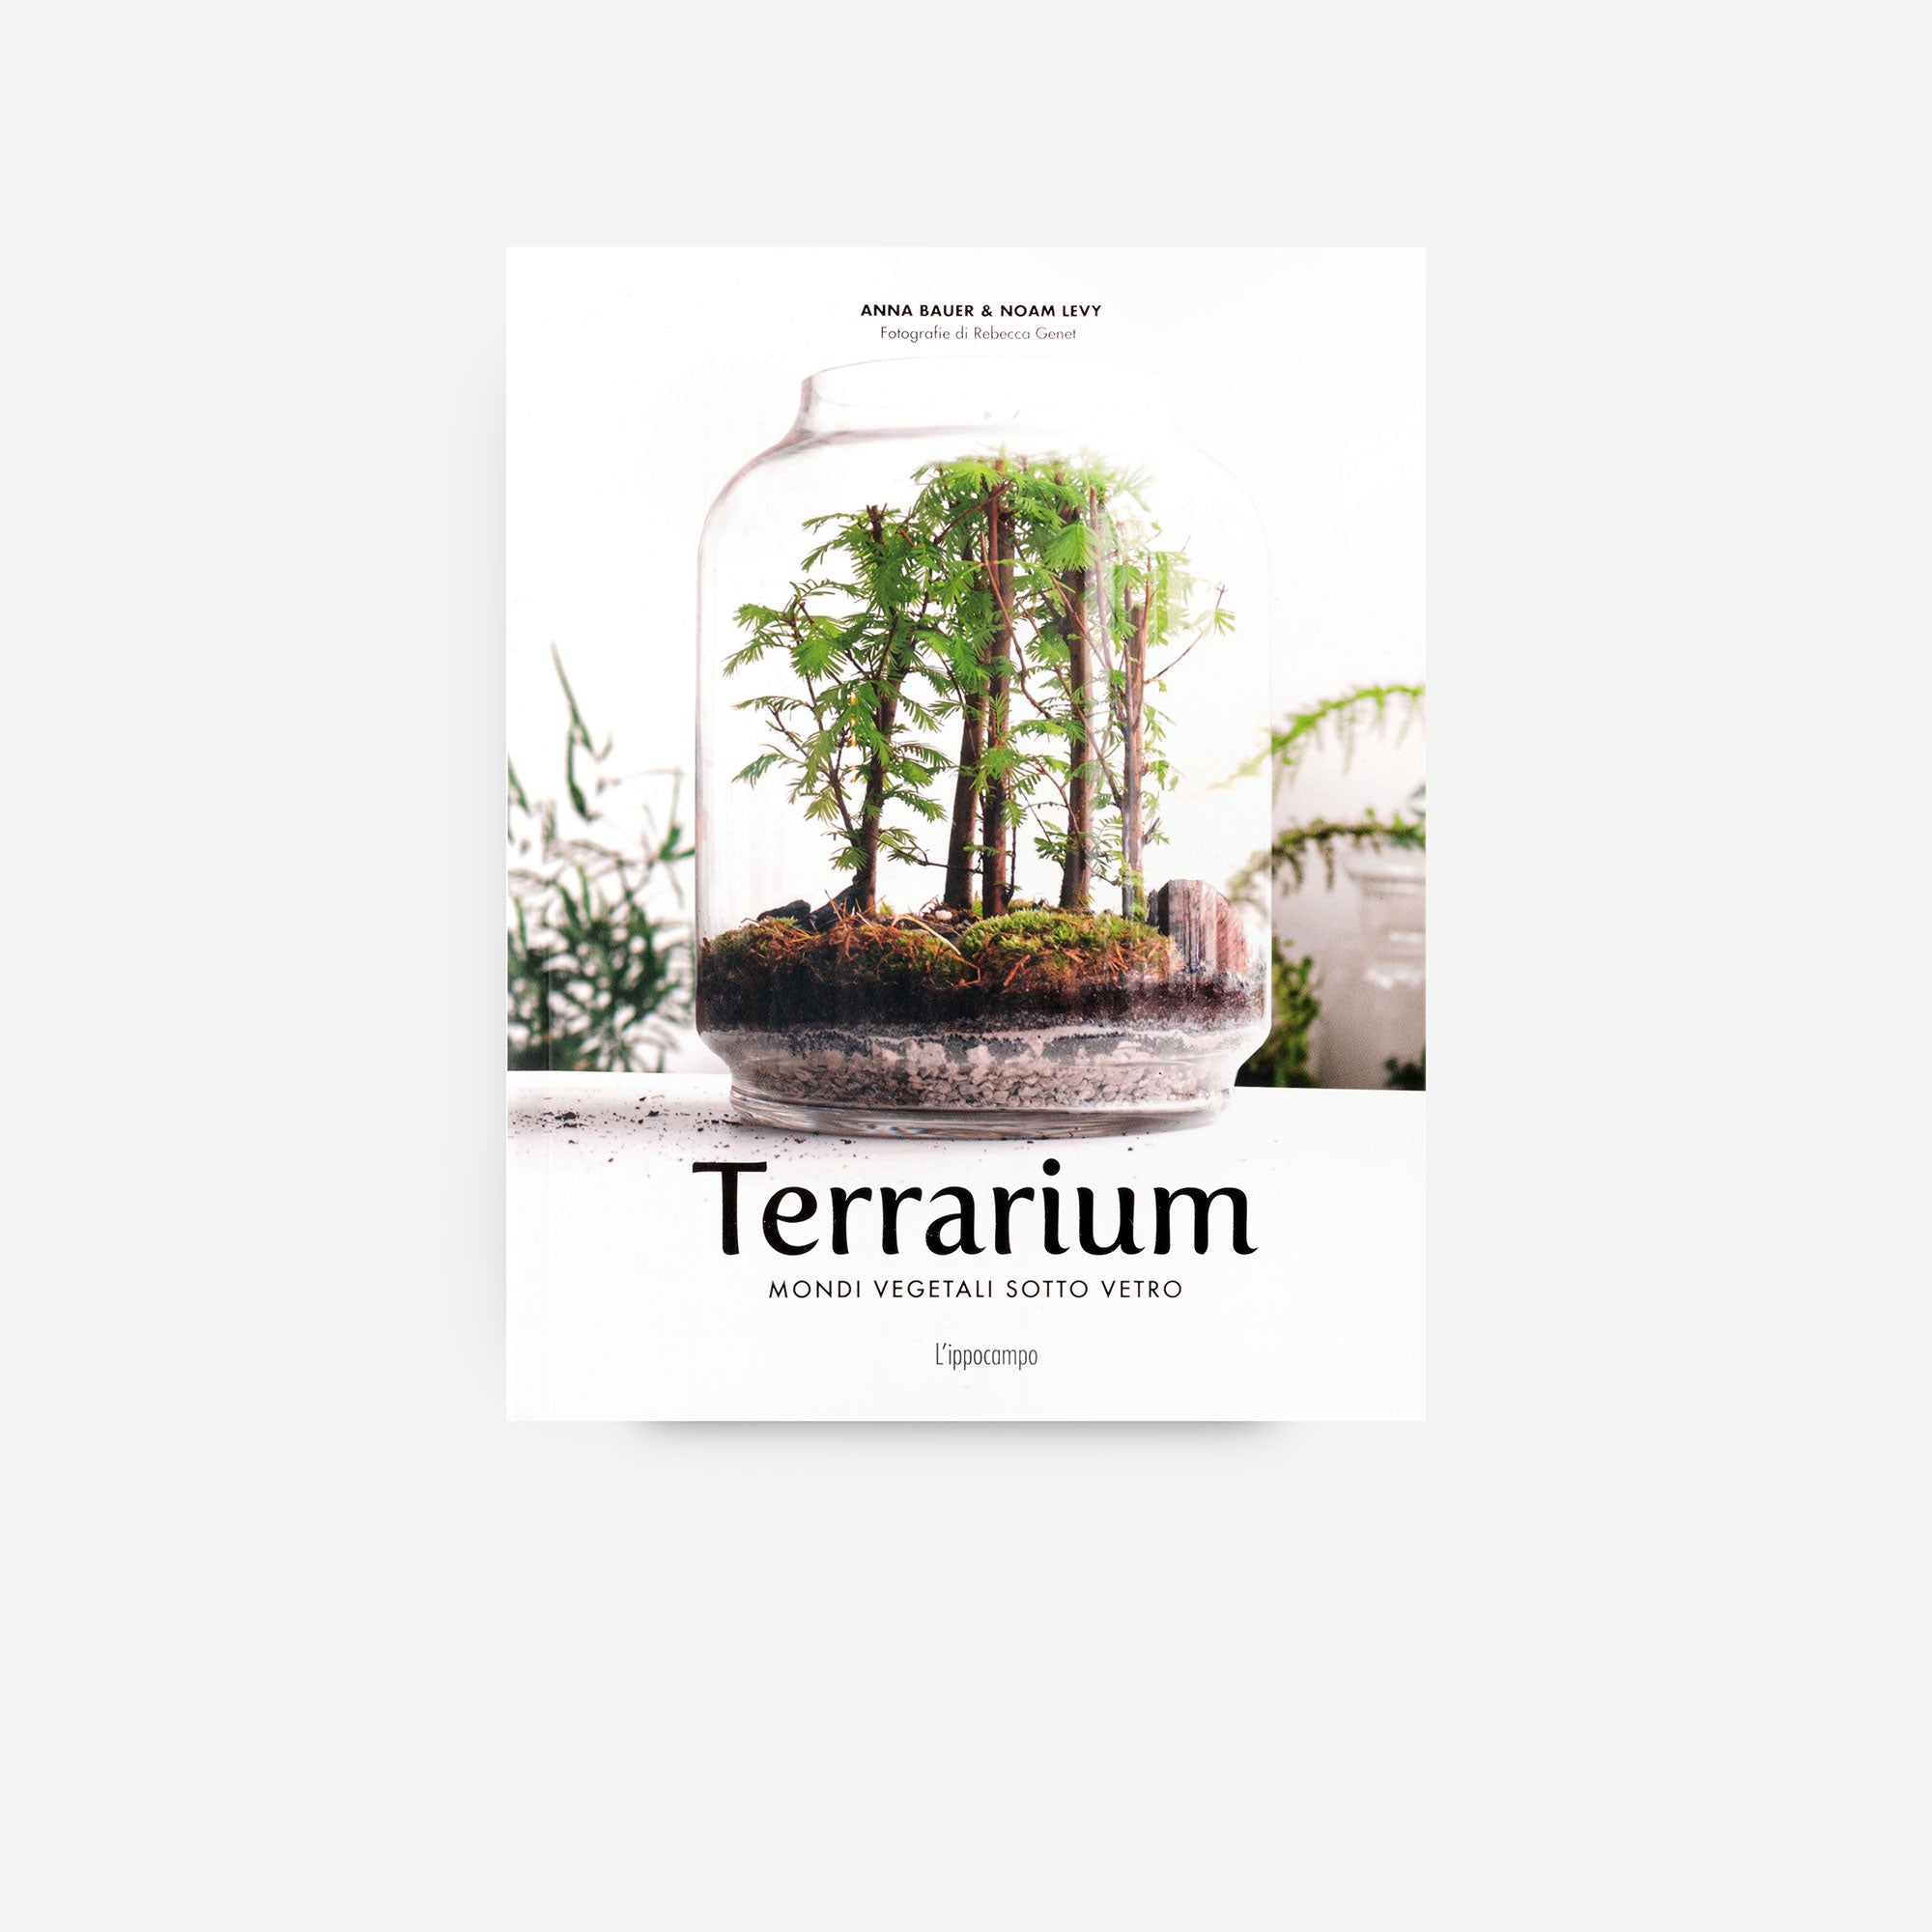 Terrarium - Mondi vegetali sotto vetro